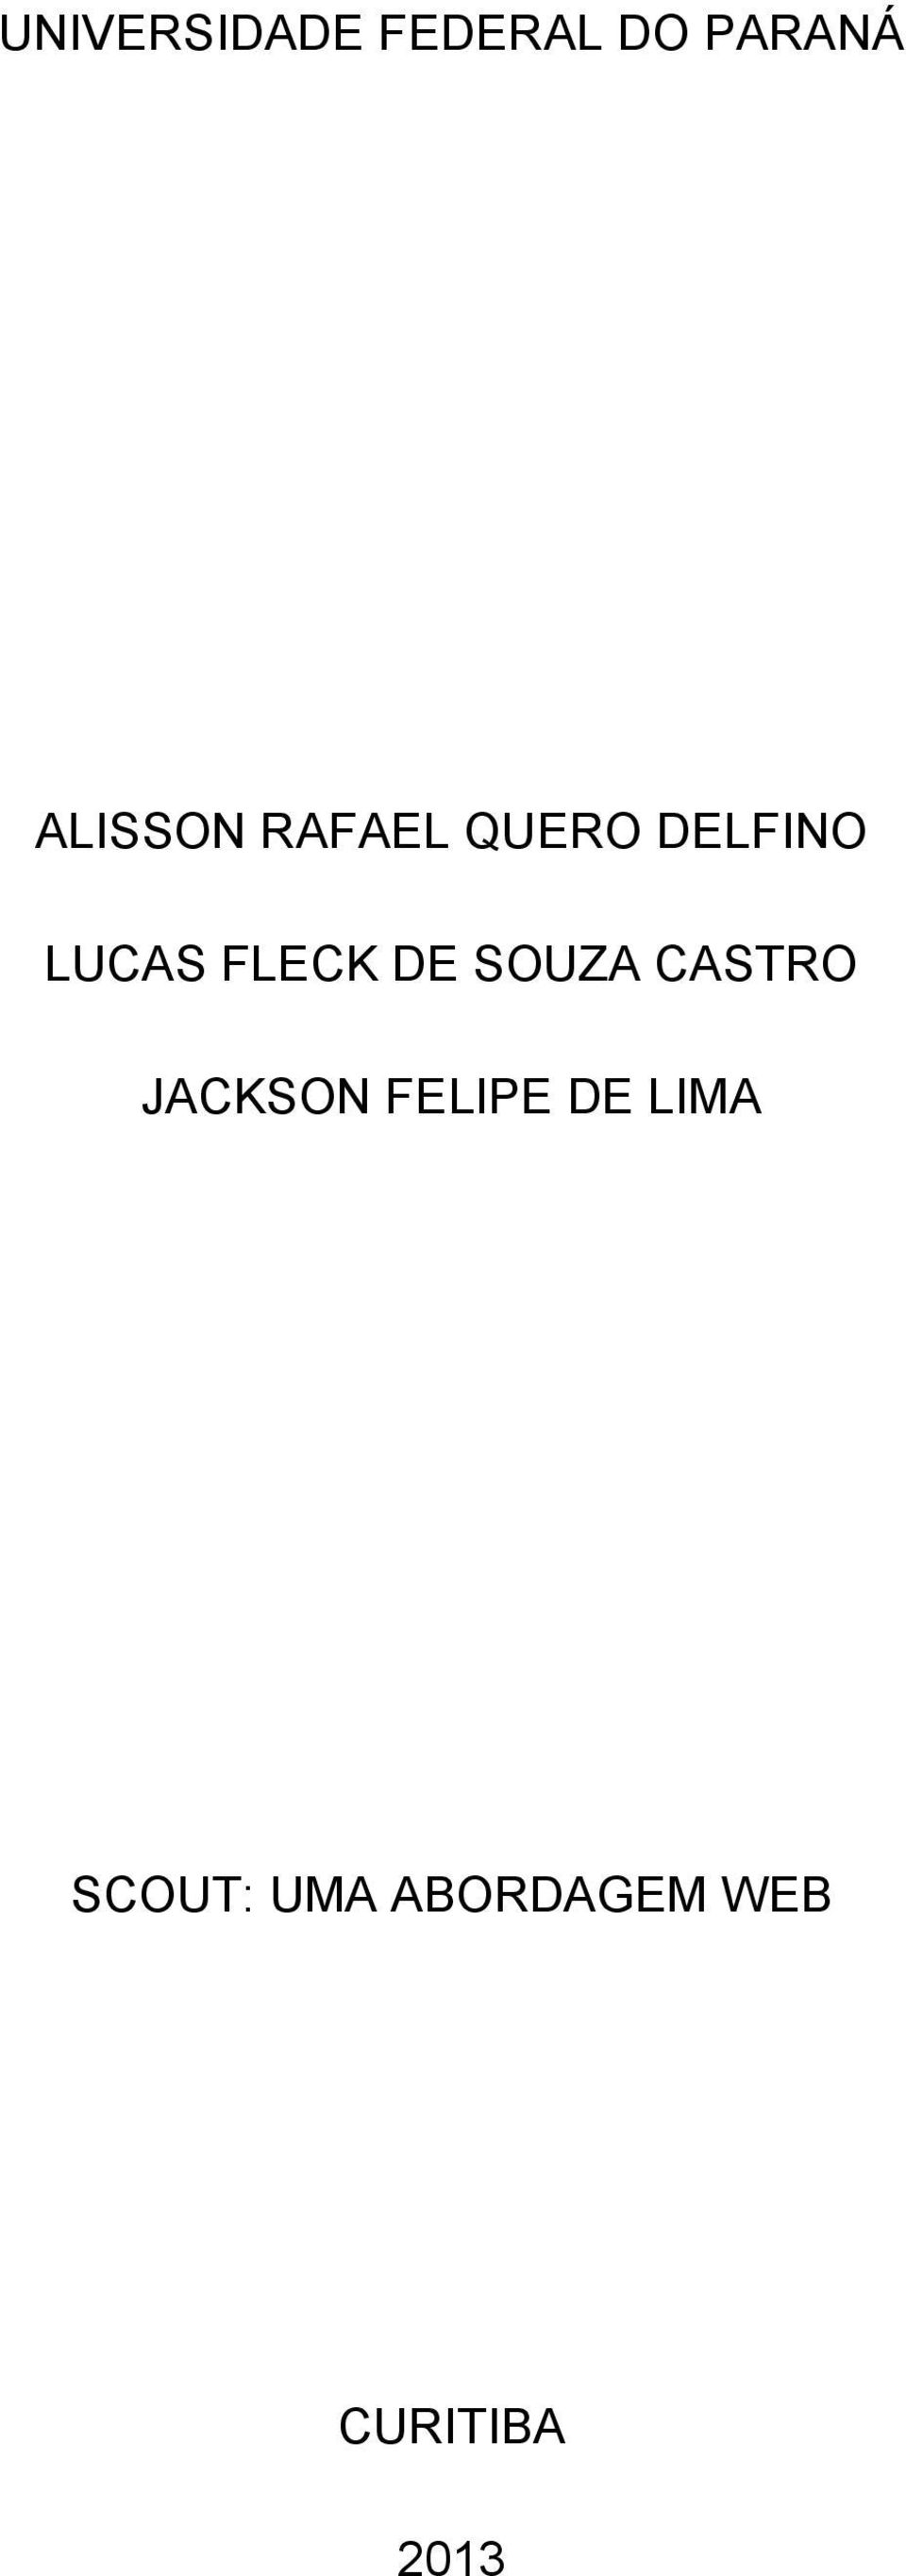 FLECK DE SOUZA CASTRO JACKSON FELIPE